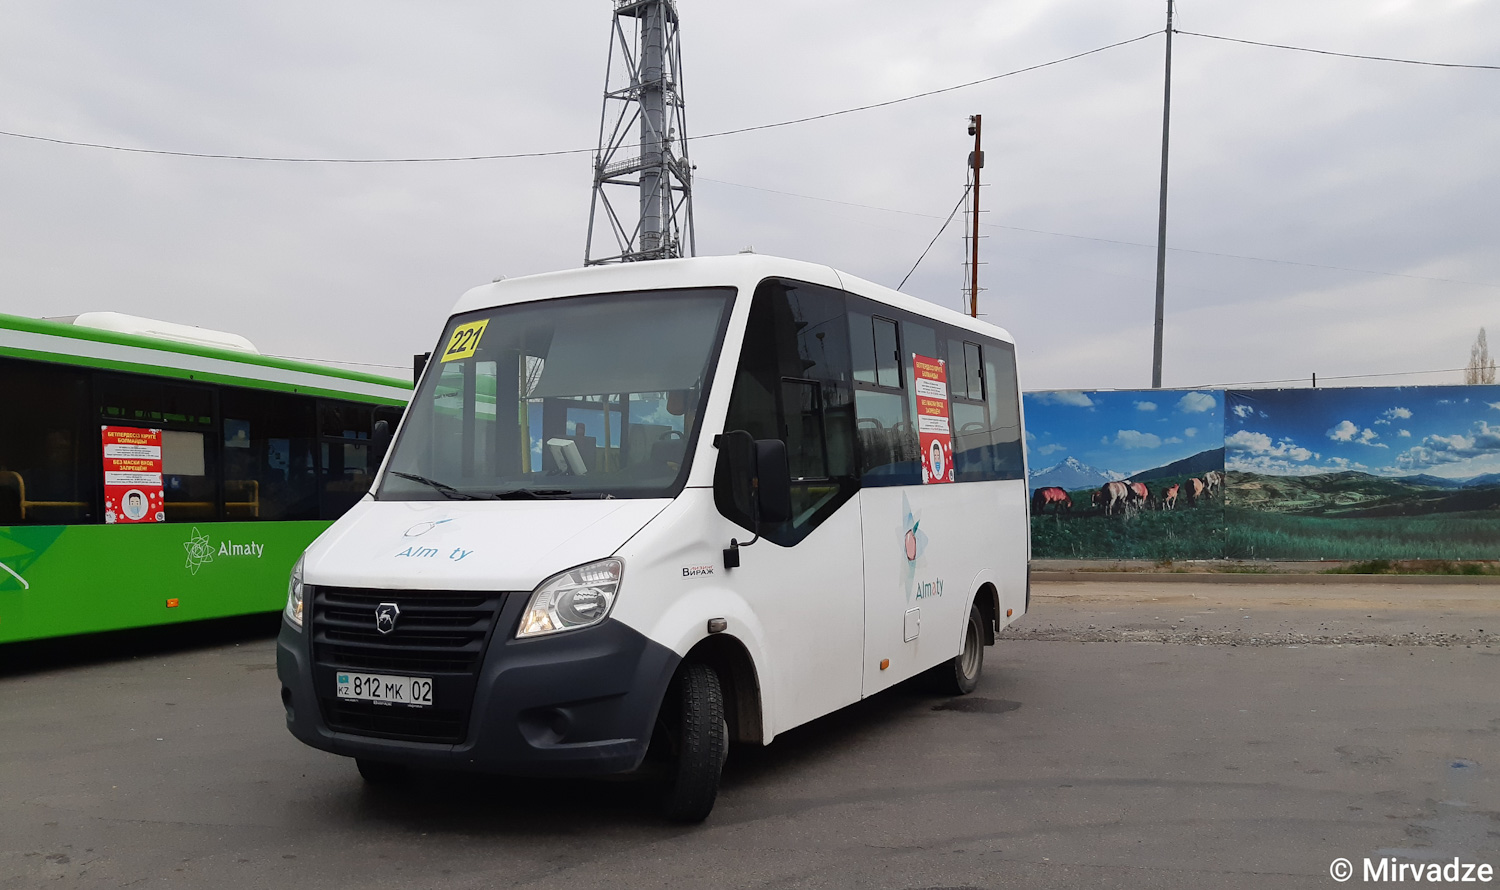 Almaty, ГАЗ-A64R42 Next č. 812 MK 02